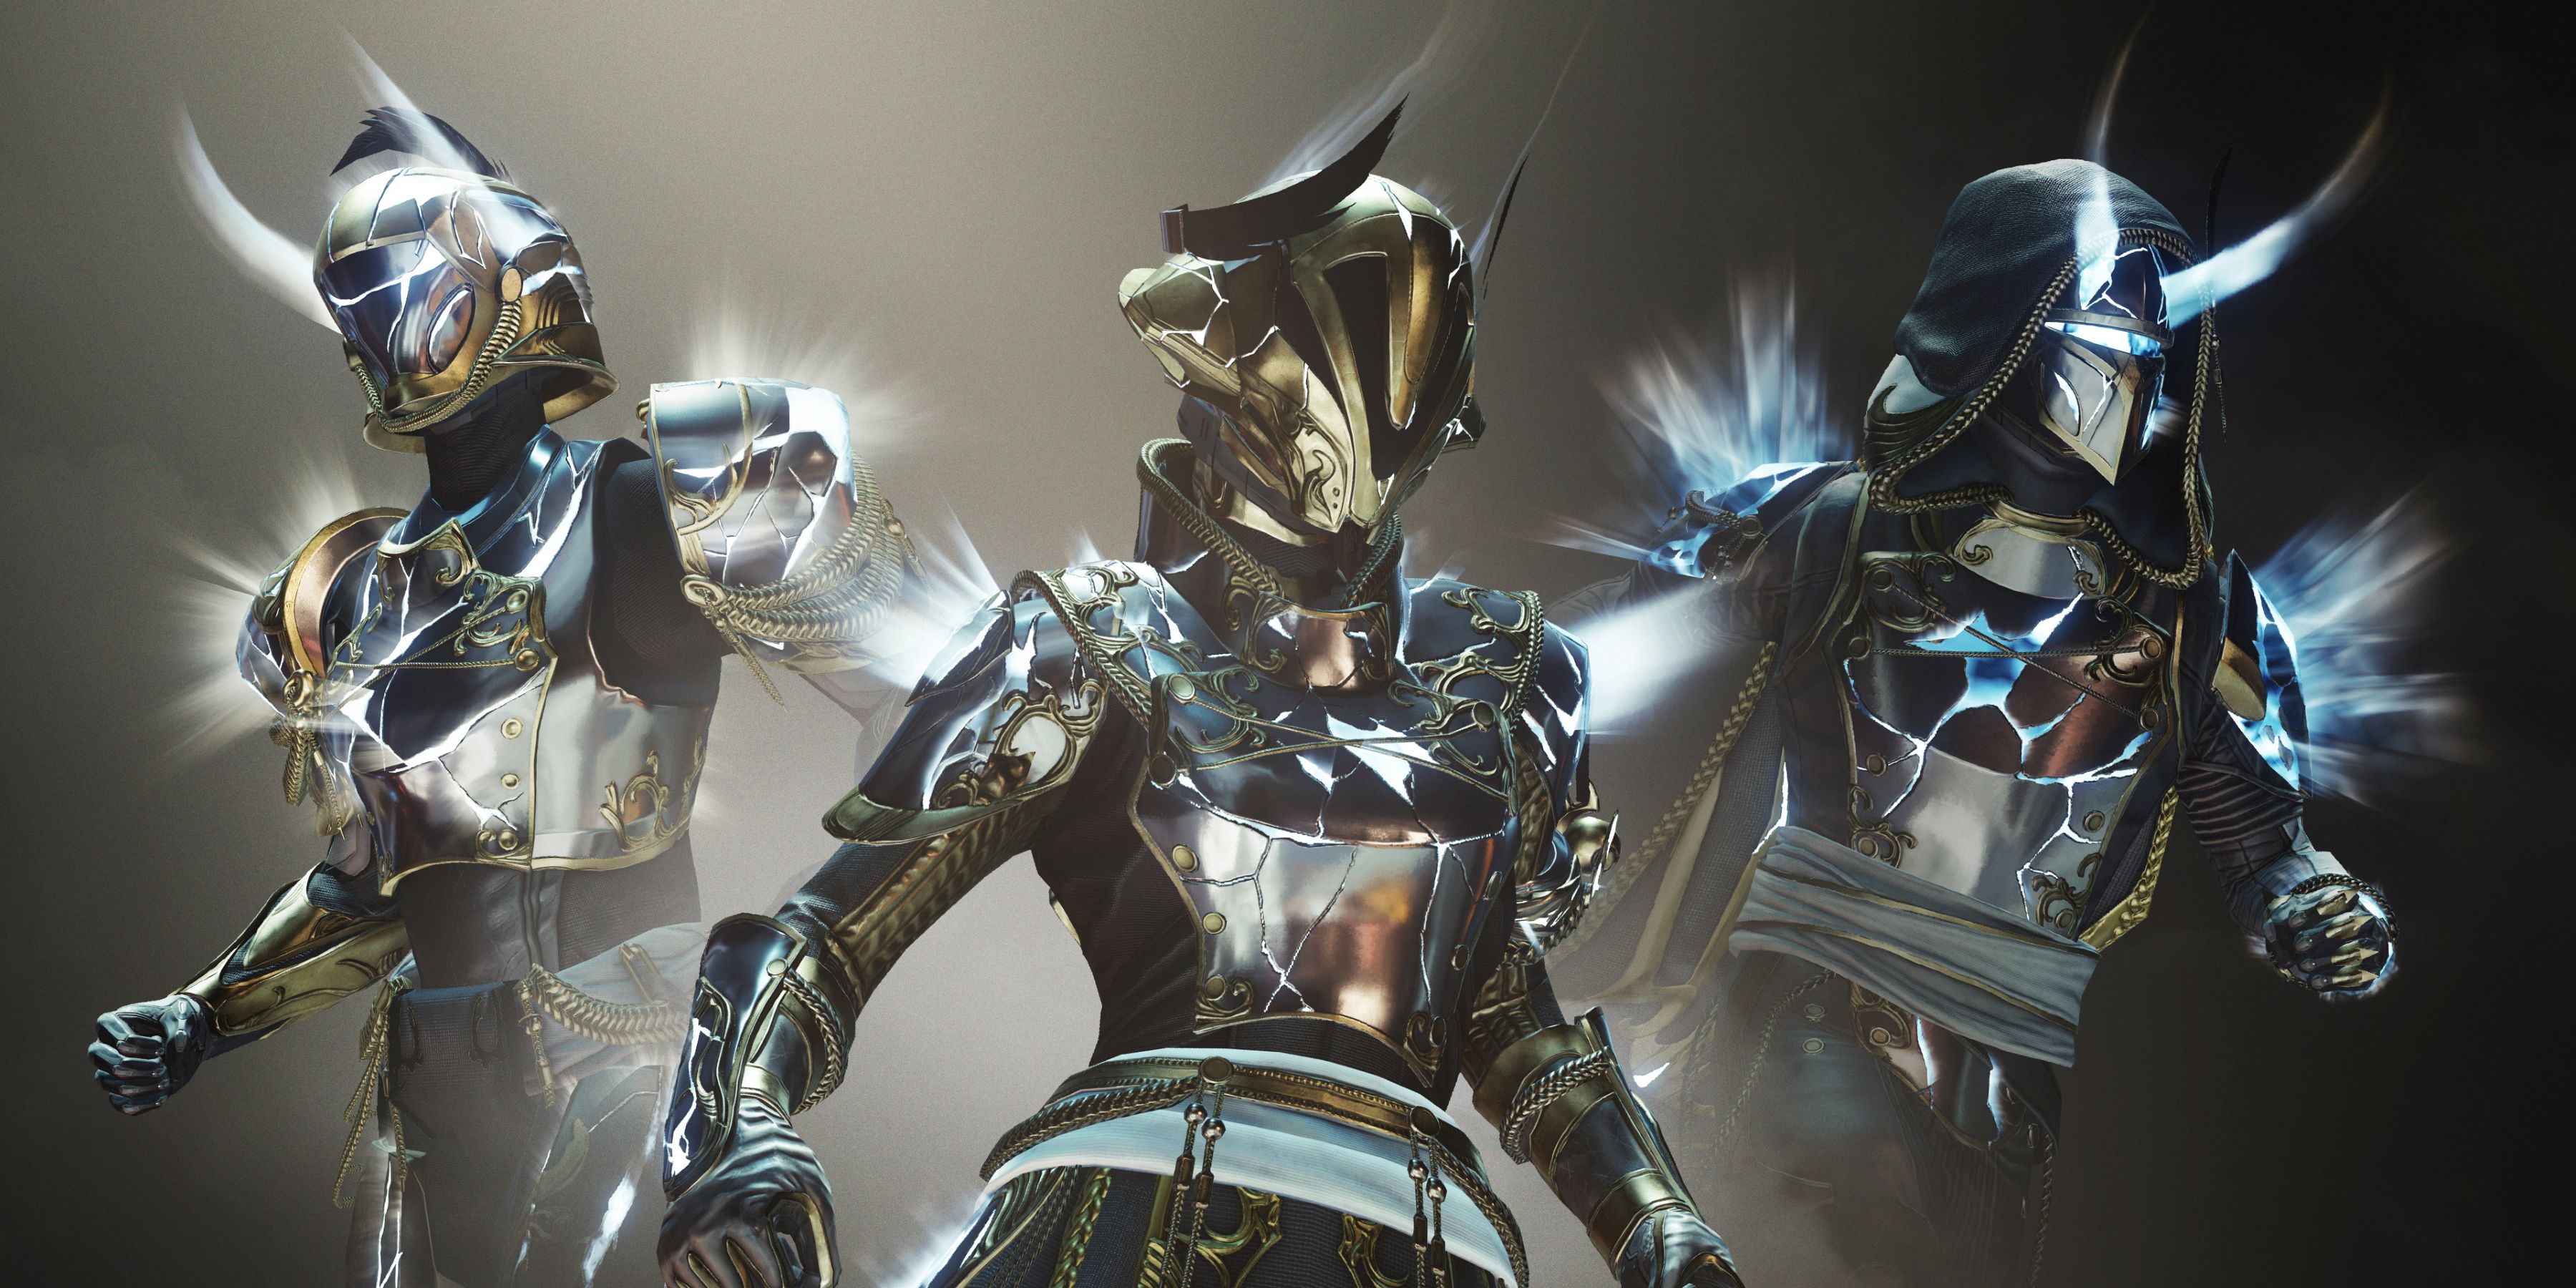 How to Unlock Solstice of Heroes Armor Glow Upgrade in Destiny 2